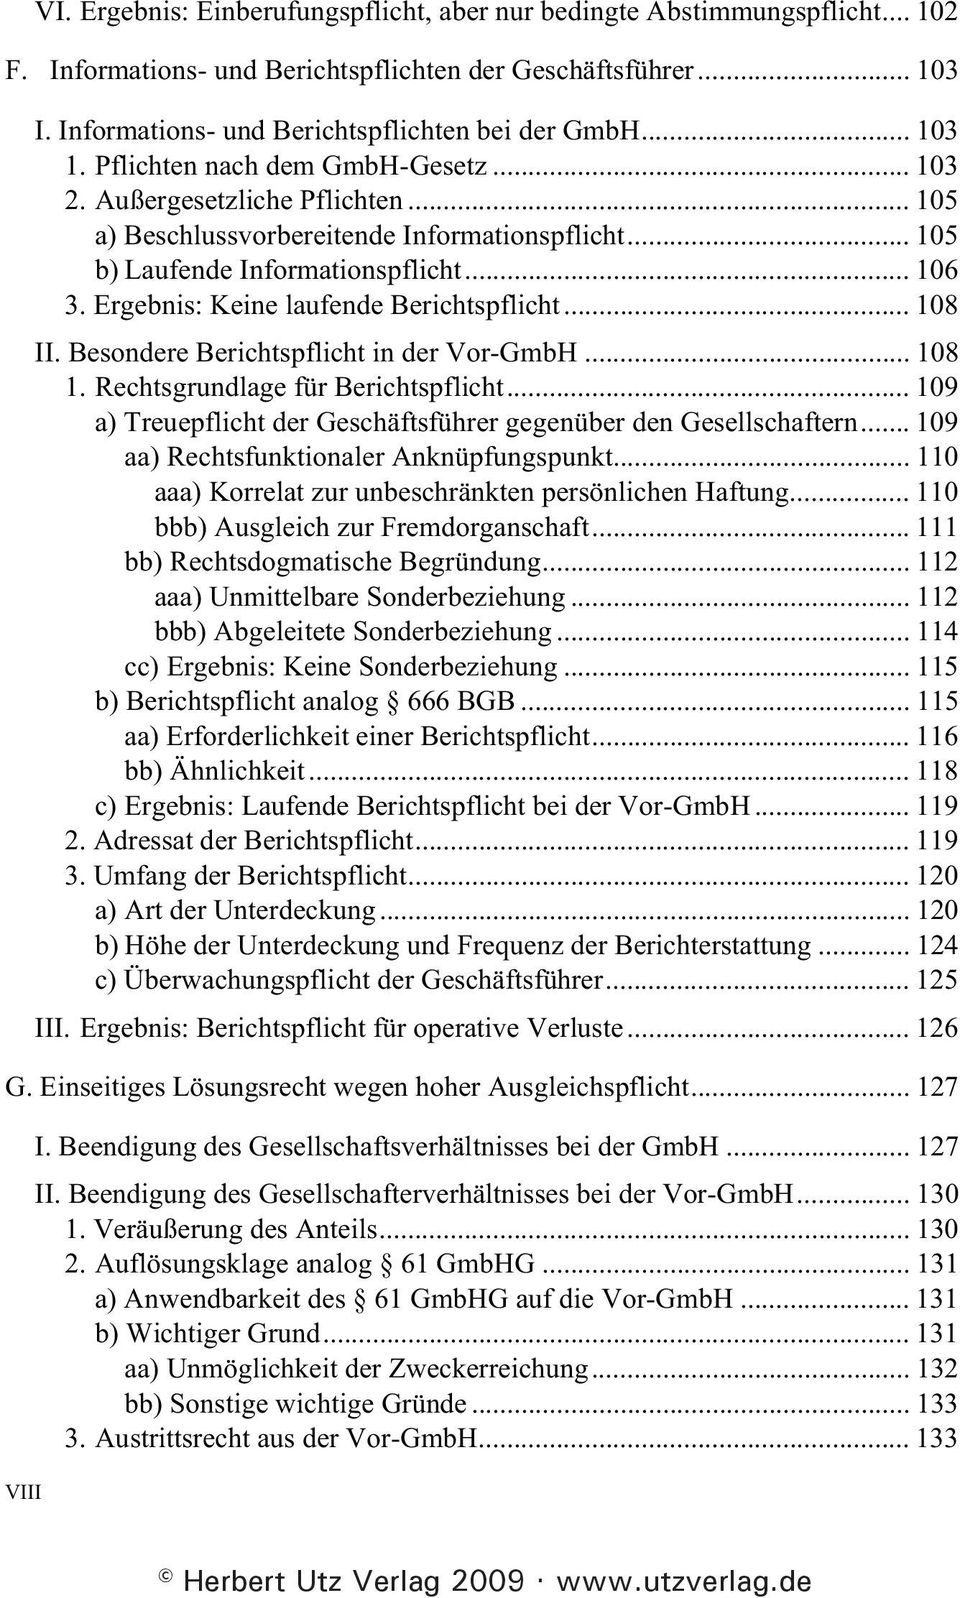 .. 105 b) Laufende Informationspflicht... 106 3. Ergebnis: Keine laufende Berichtspflicht... 108 II. Besondere Berichtspflicht in der Vor-GmbH... 108 1. Rechtsgrundlage für Berichtspflicht.